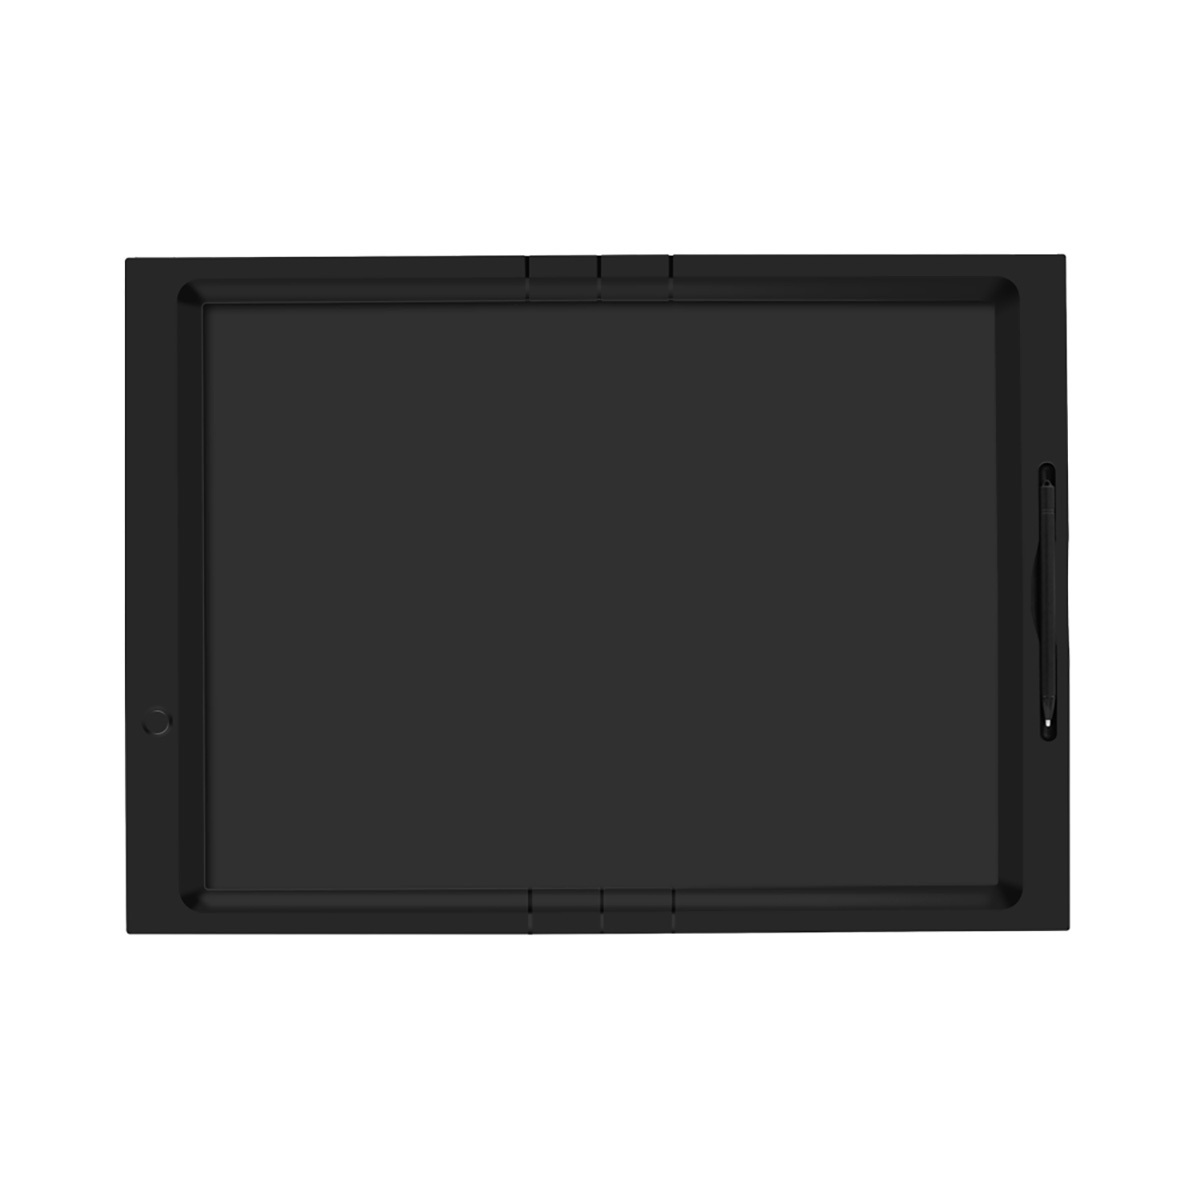 LCD 스케치몬 보드 53cm